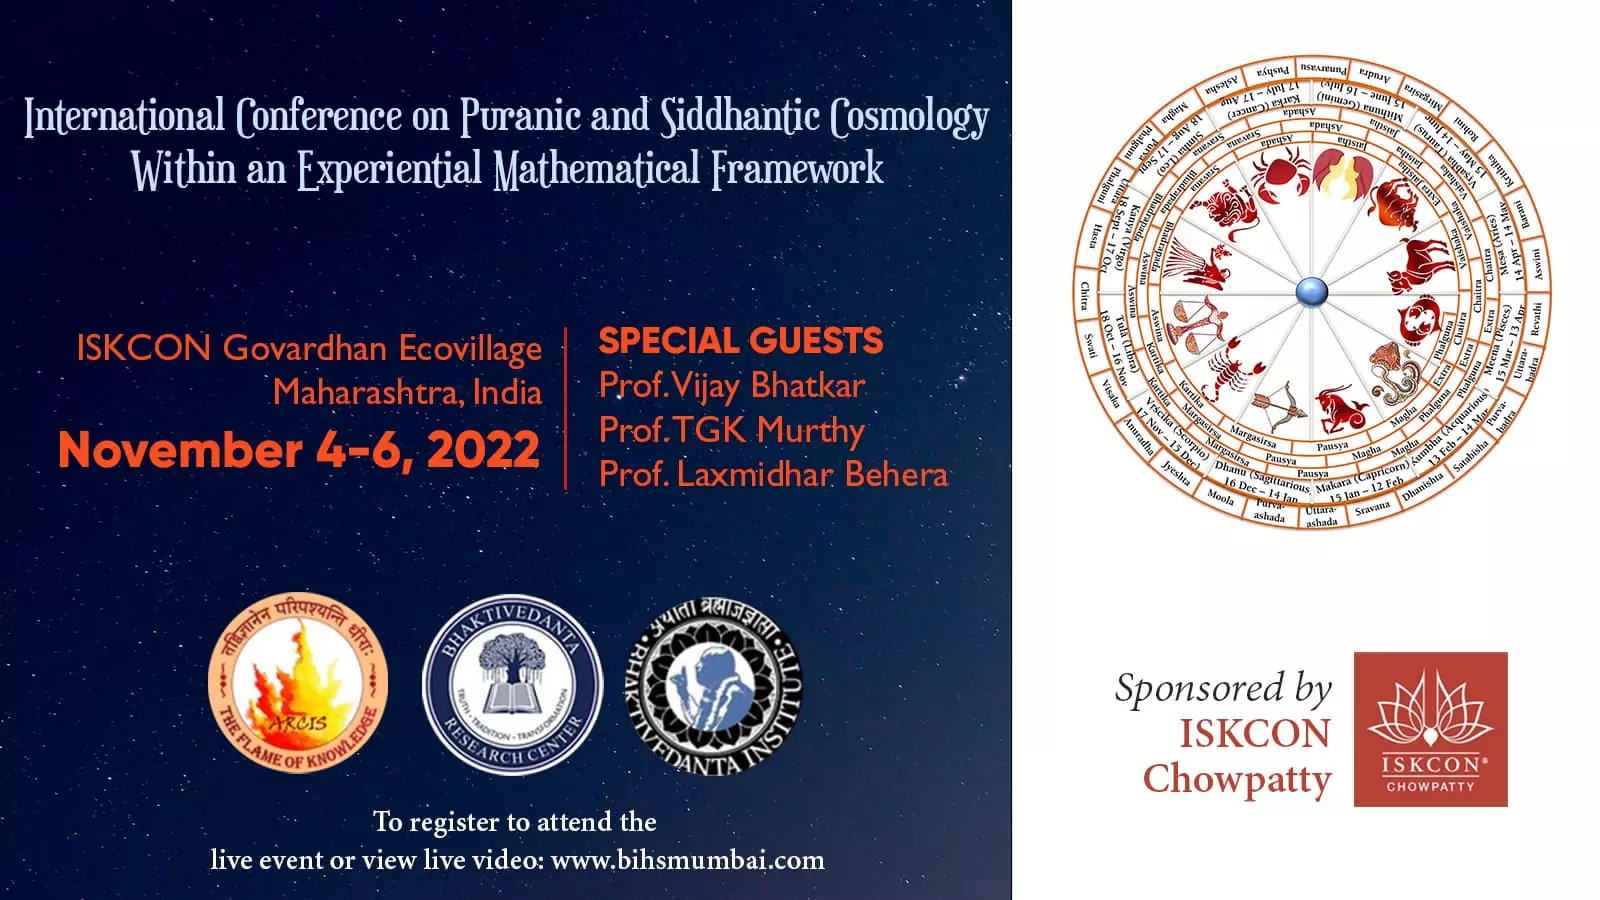 Конференция по пуранической и сиддхантической космологии, экопоселок Говардхан, 4-6 ноября 2022 г.